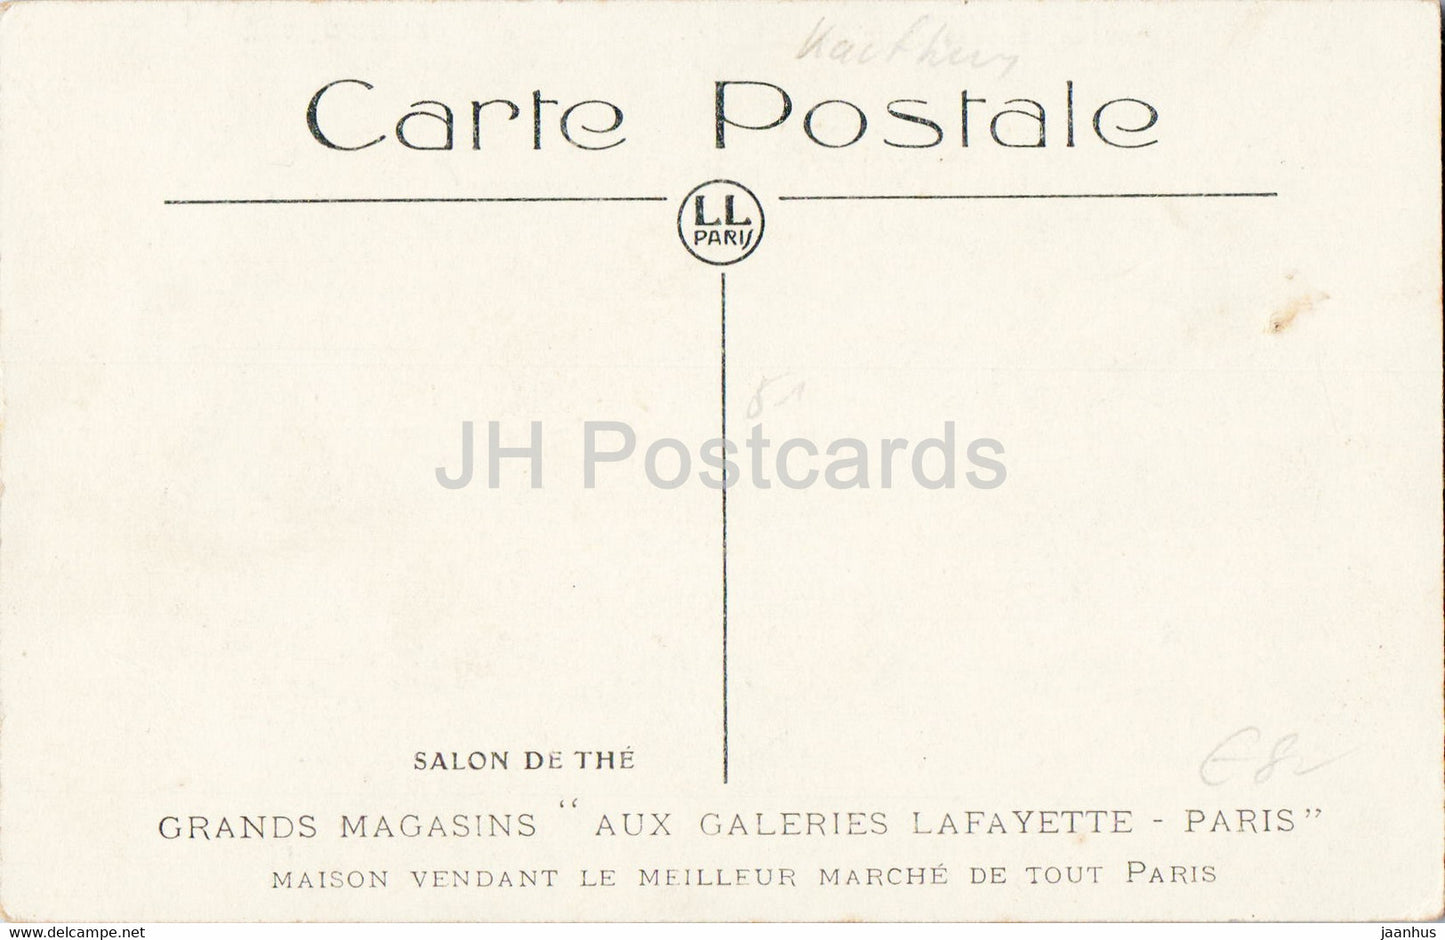 Paris - Salon de The - Grands Magasins Aux Galeries Lafayette - alte Postkarte - Frankreich - unbenutzt